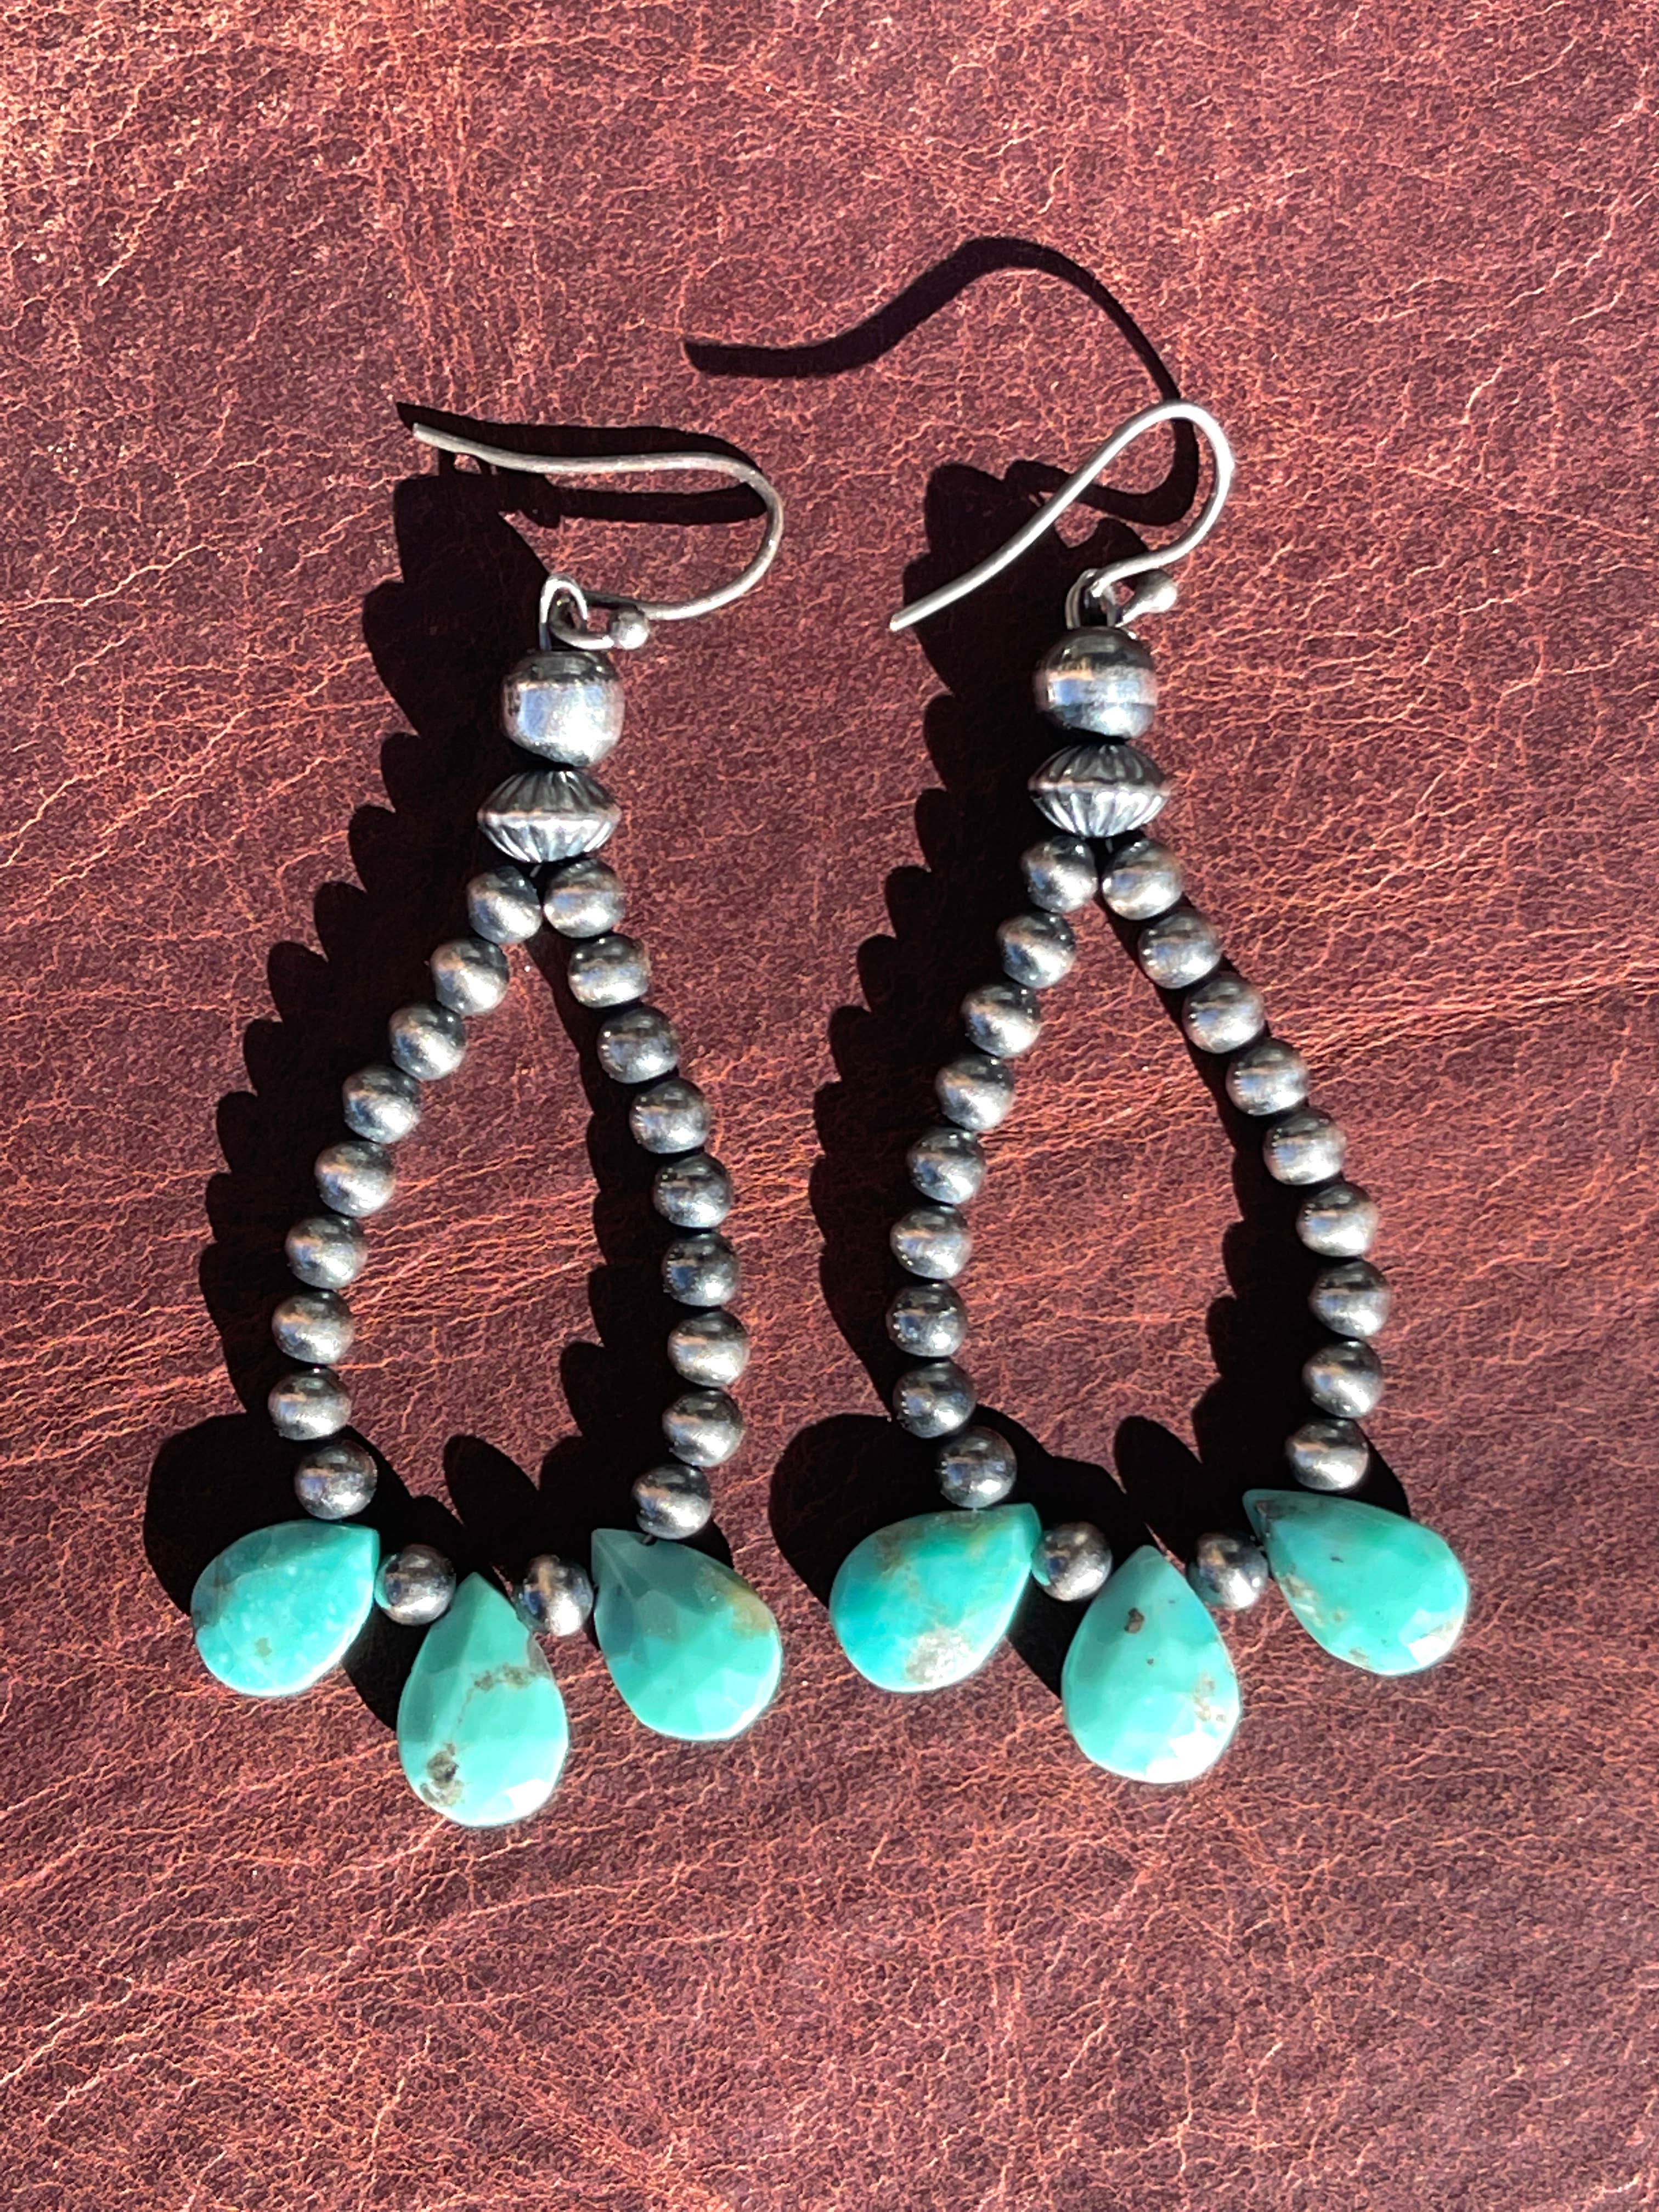 Mint Blue Arizona Turquoise & Pearl  AA  Grade Dangle Earrings w/ 925 Sterling